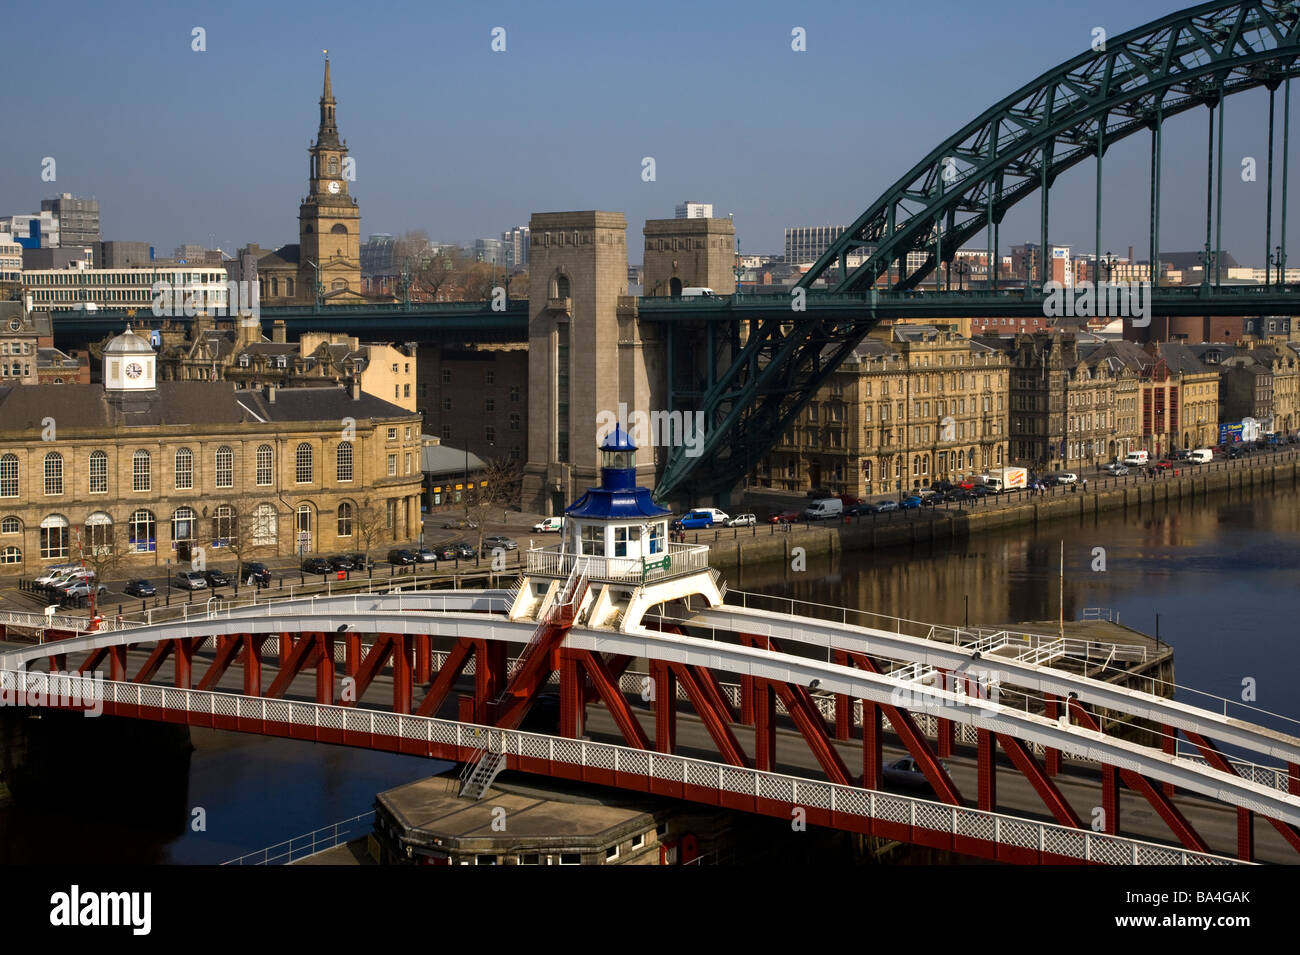 Tyne e ponti girevoli con lo skyline della citta', Newcastle Gateshead, Inghilterra. Foto Stock